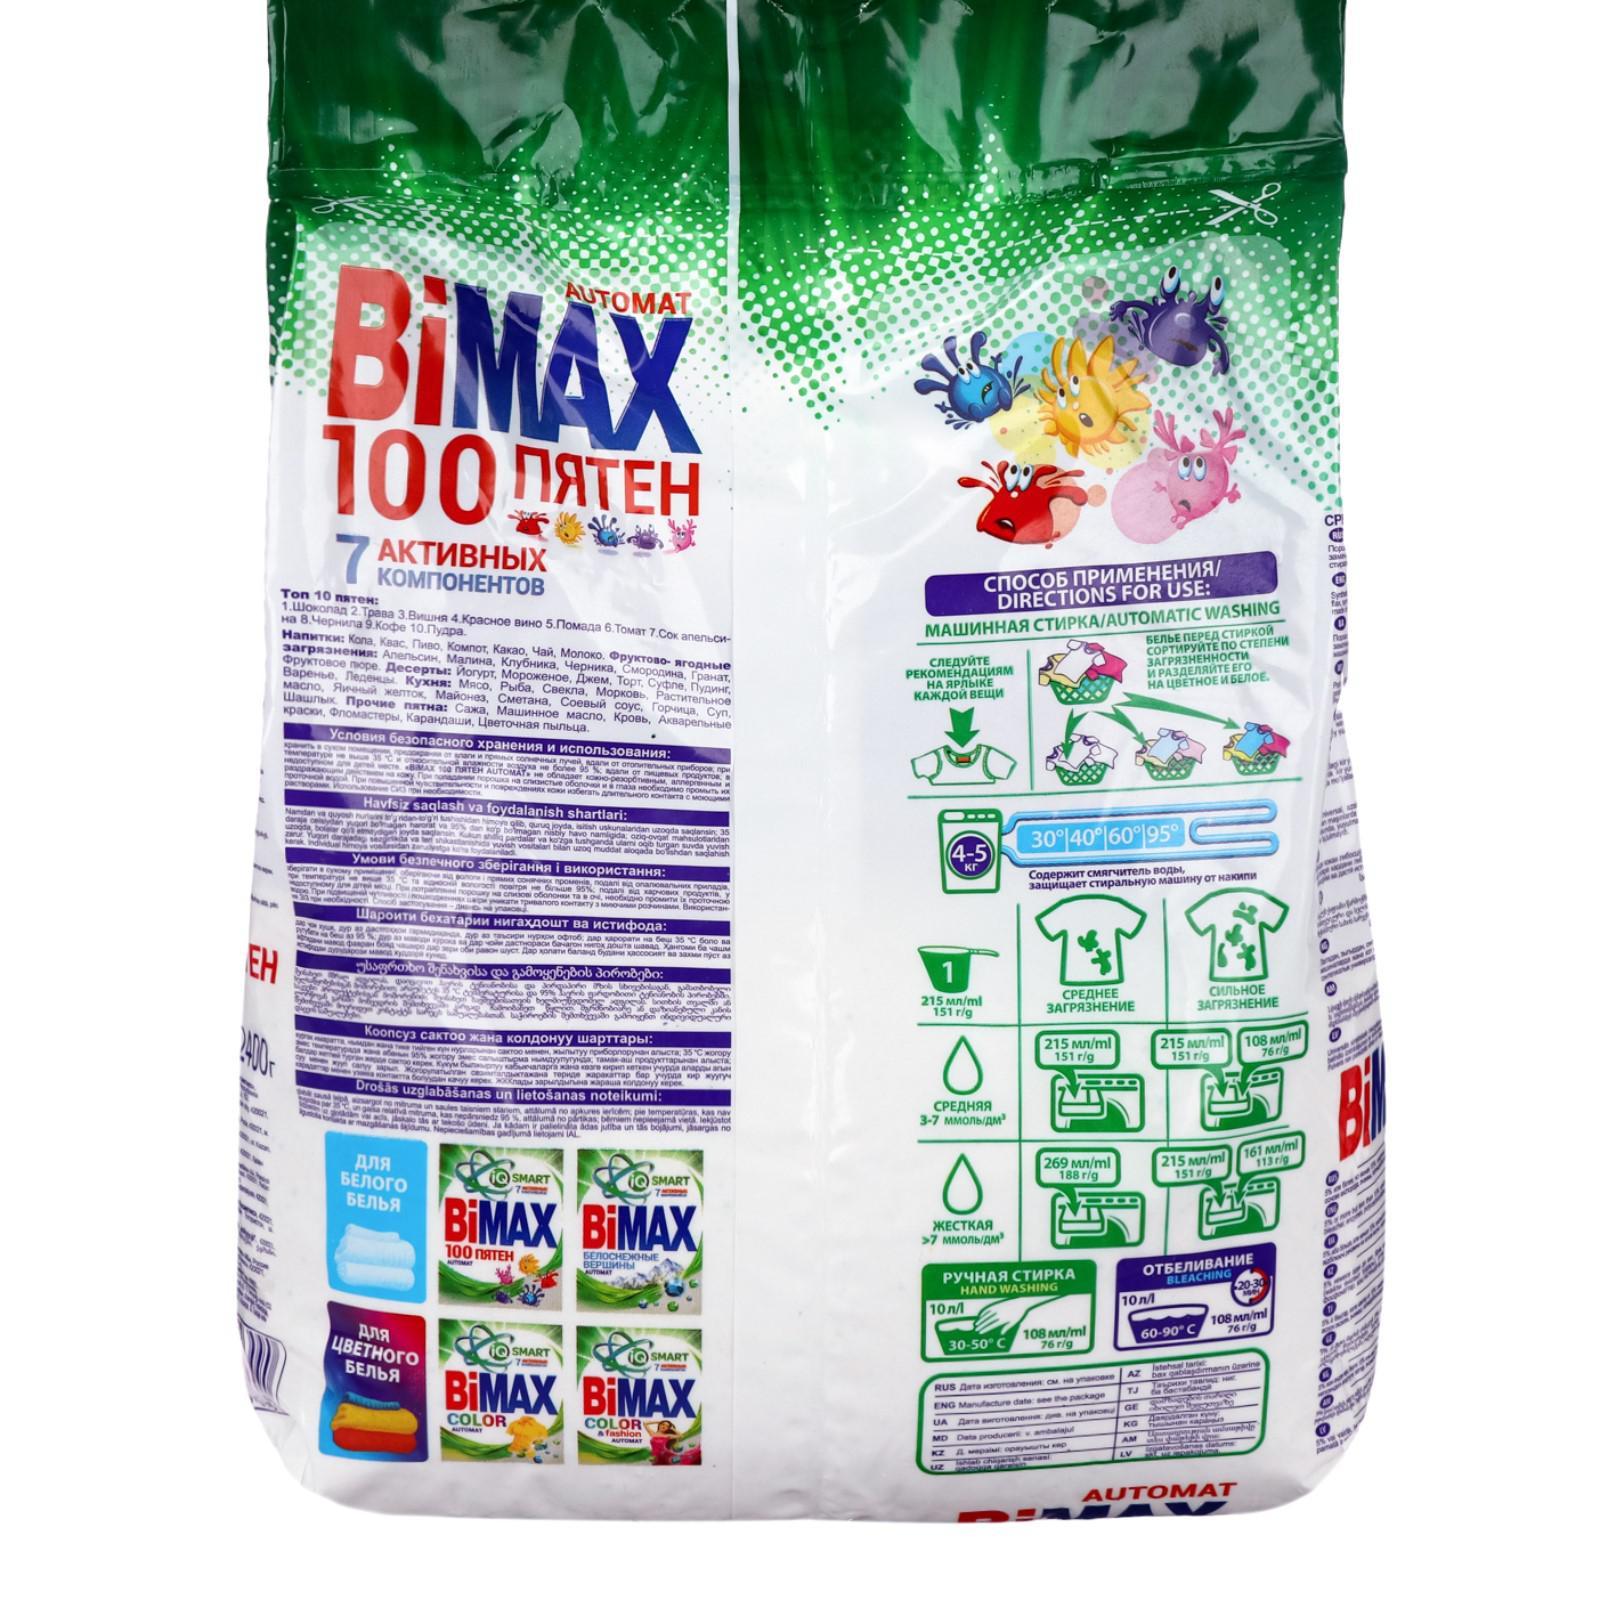 100 пятен. Порошок BIMAX 100 пятен автомат 2,4кг. Порошок BIMAX 100 пятен. BIMAX automat 100 пятен. BIMAX 100 пятен, 4 кг.